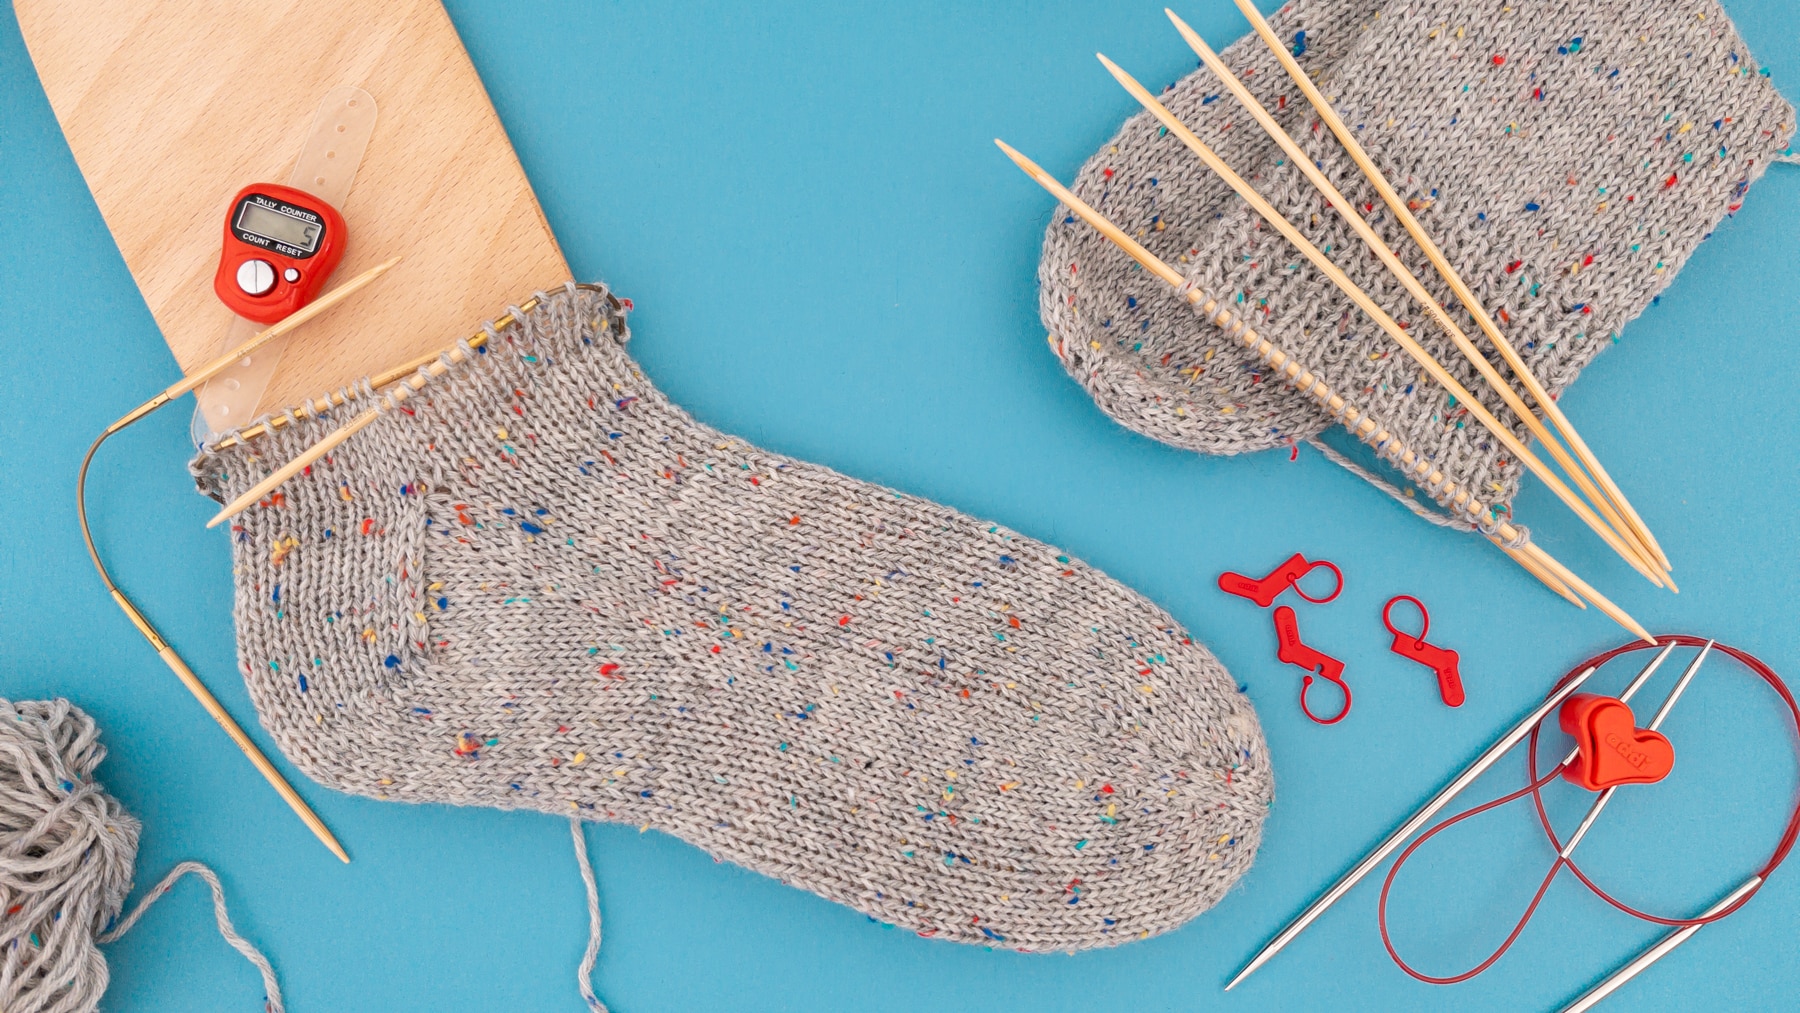 Toe-Up Socken stricken mit addiCraSyTrio - kostenlose Anleitung für Anfänger / Flexiflip sock pattern / knitting toe up socks